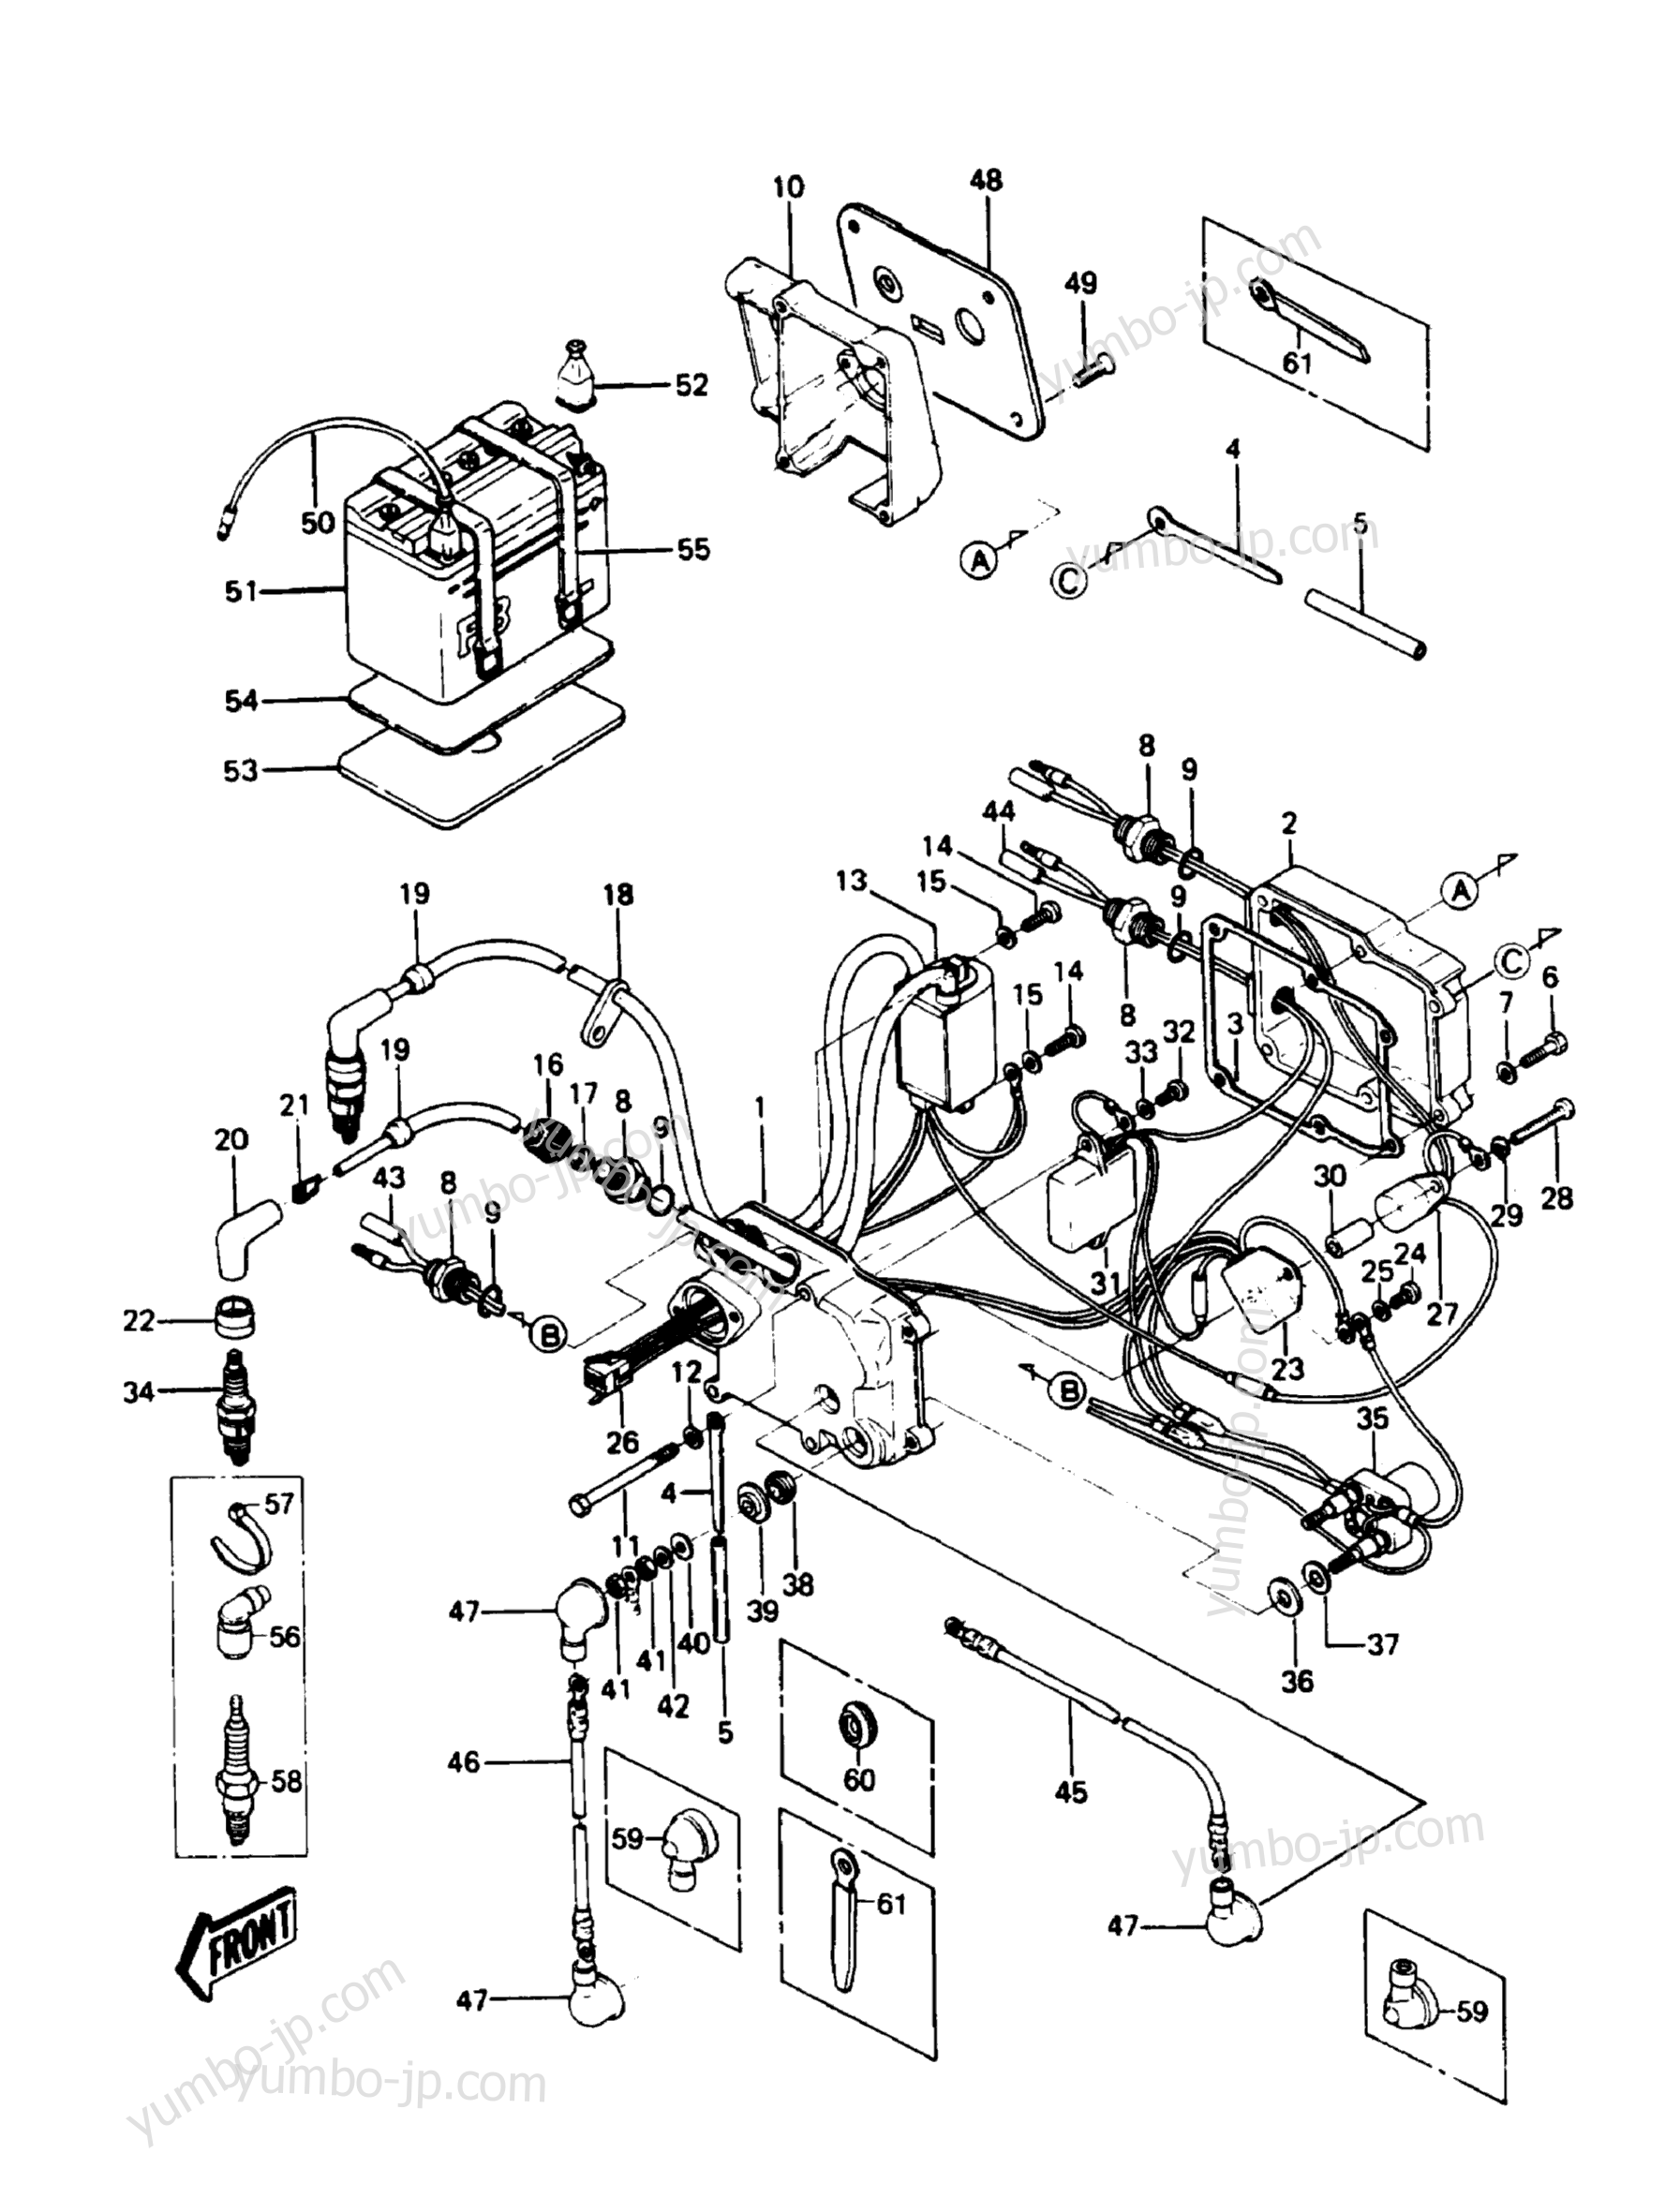 Electric Case для гидроциклов KAWASAKI JST SKI 550 (JS550-A8) 1989 г.